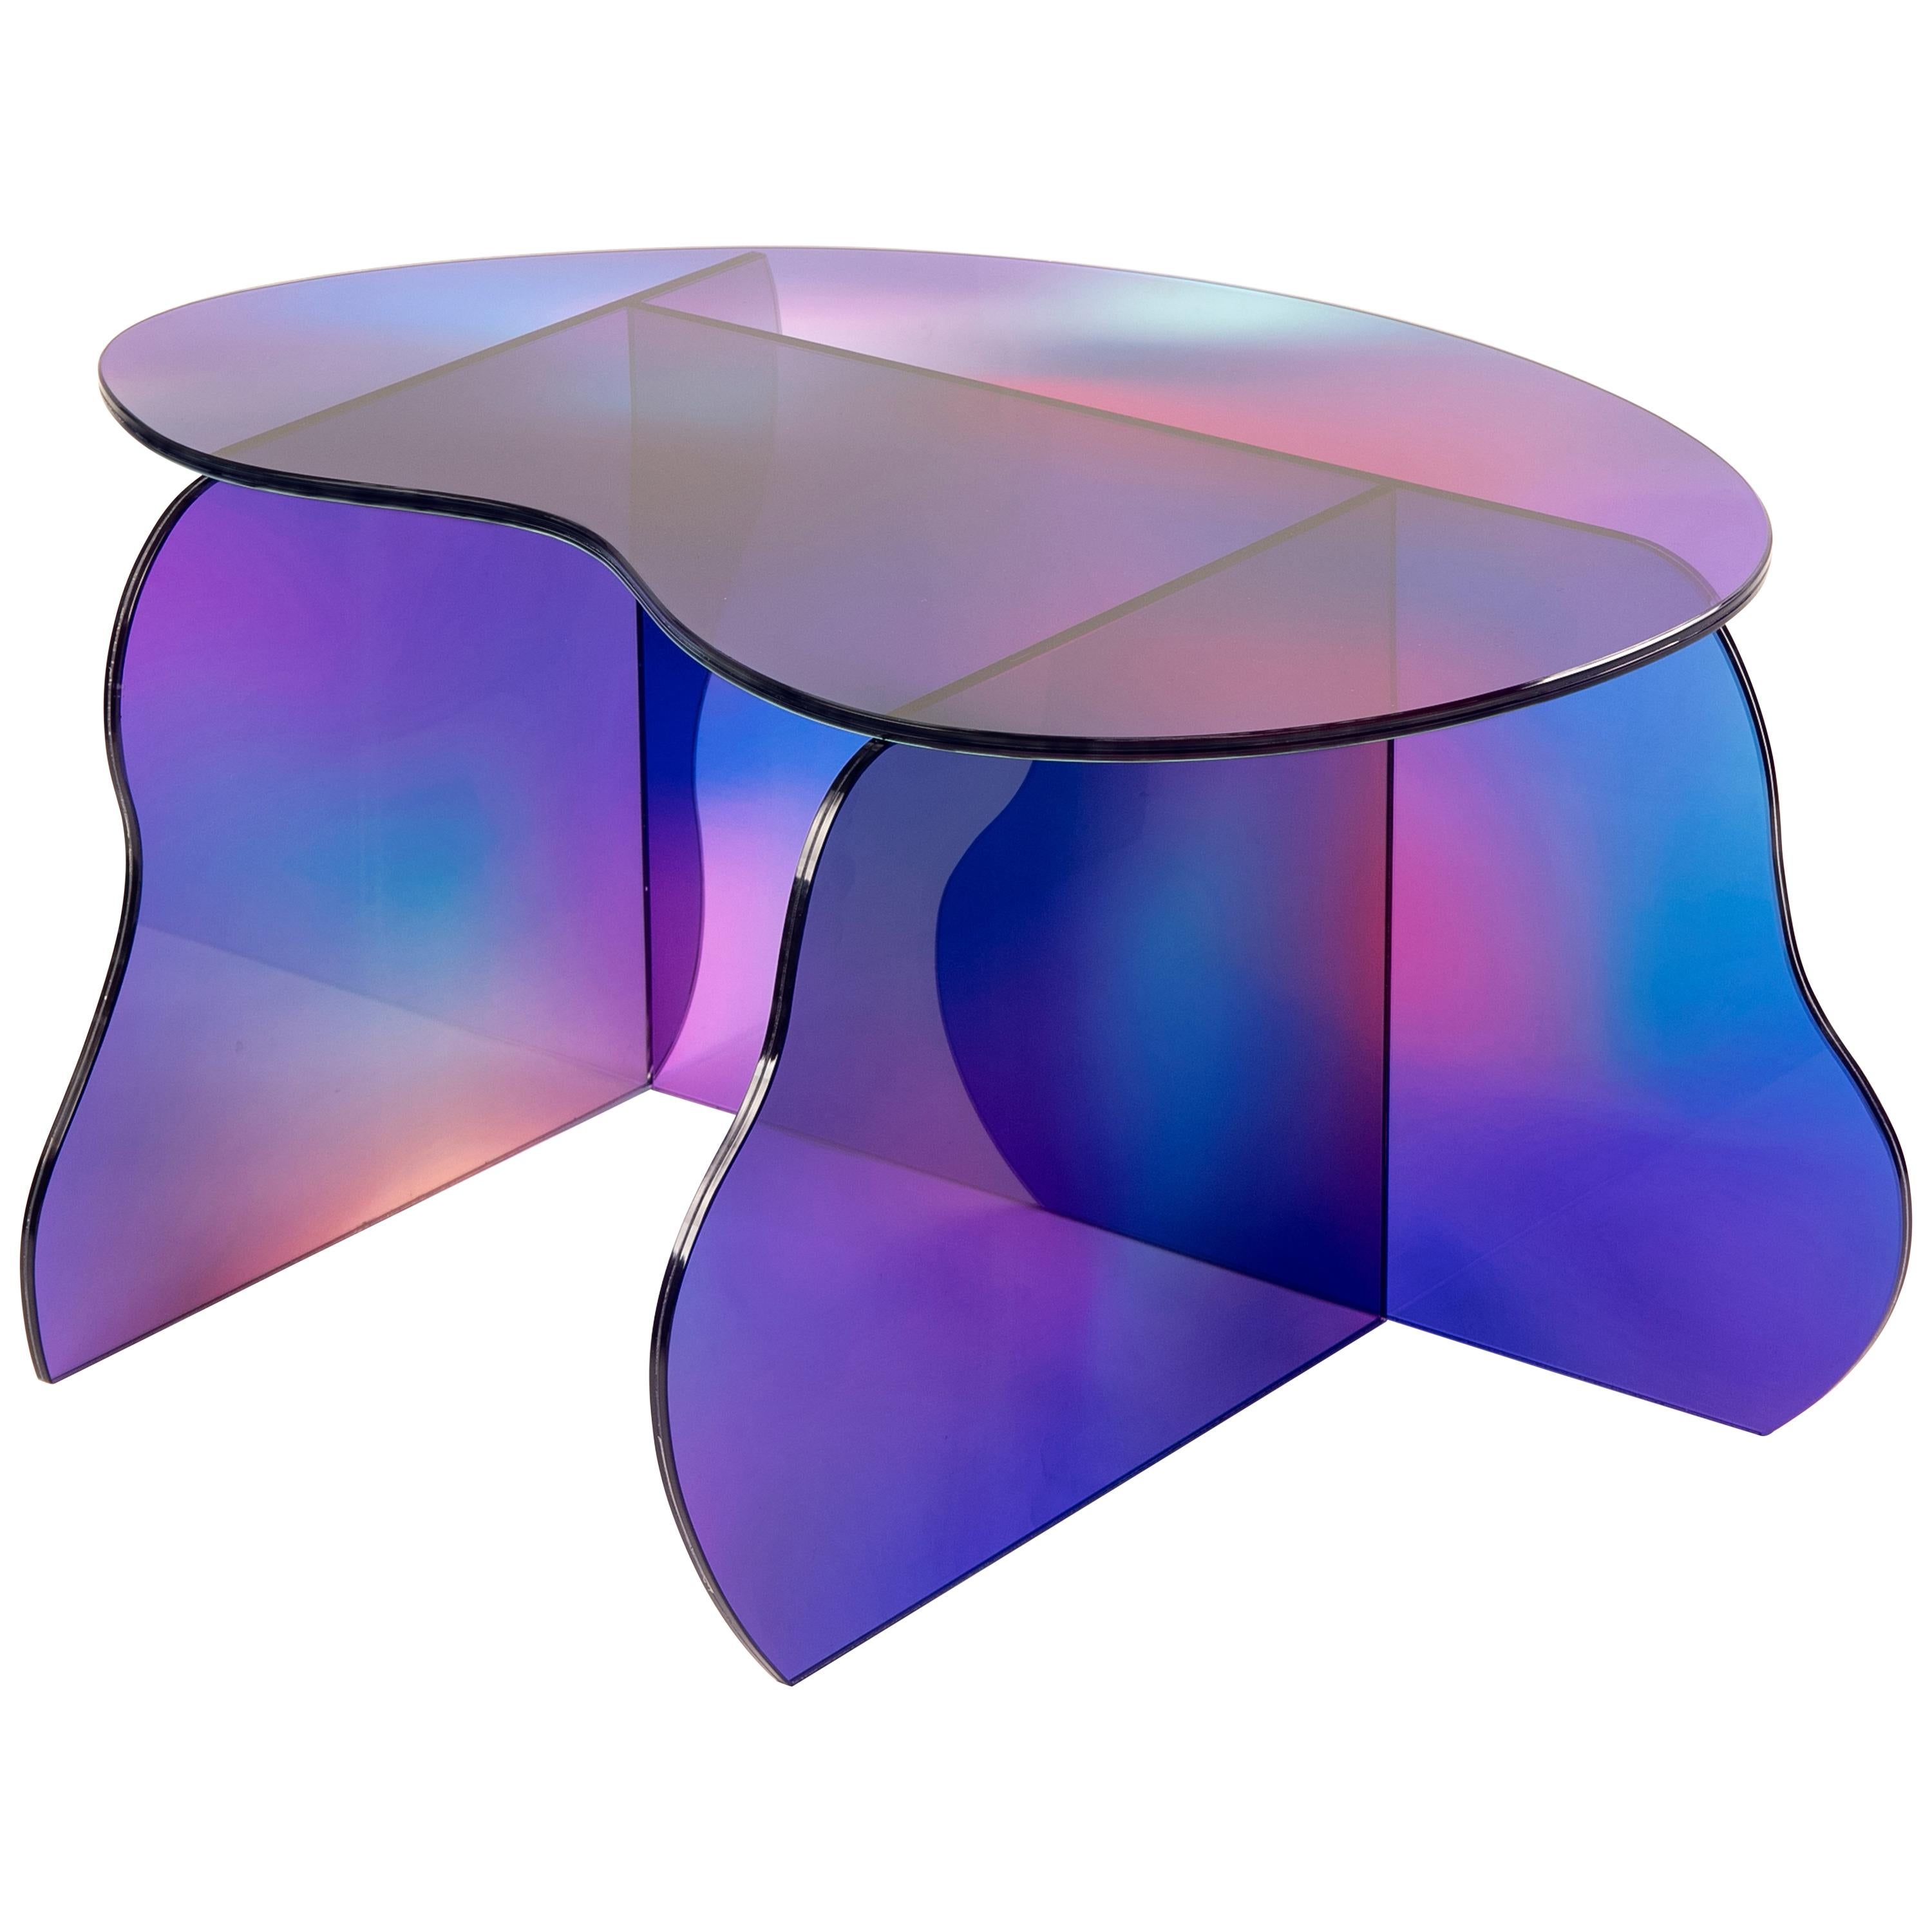 Table en verre Dichroic Aurora sculptée par Studio-Chacha